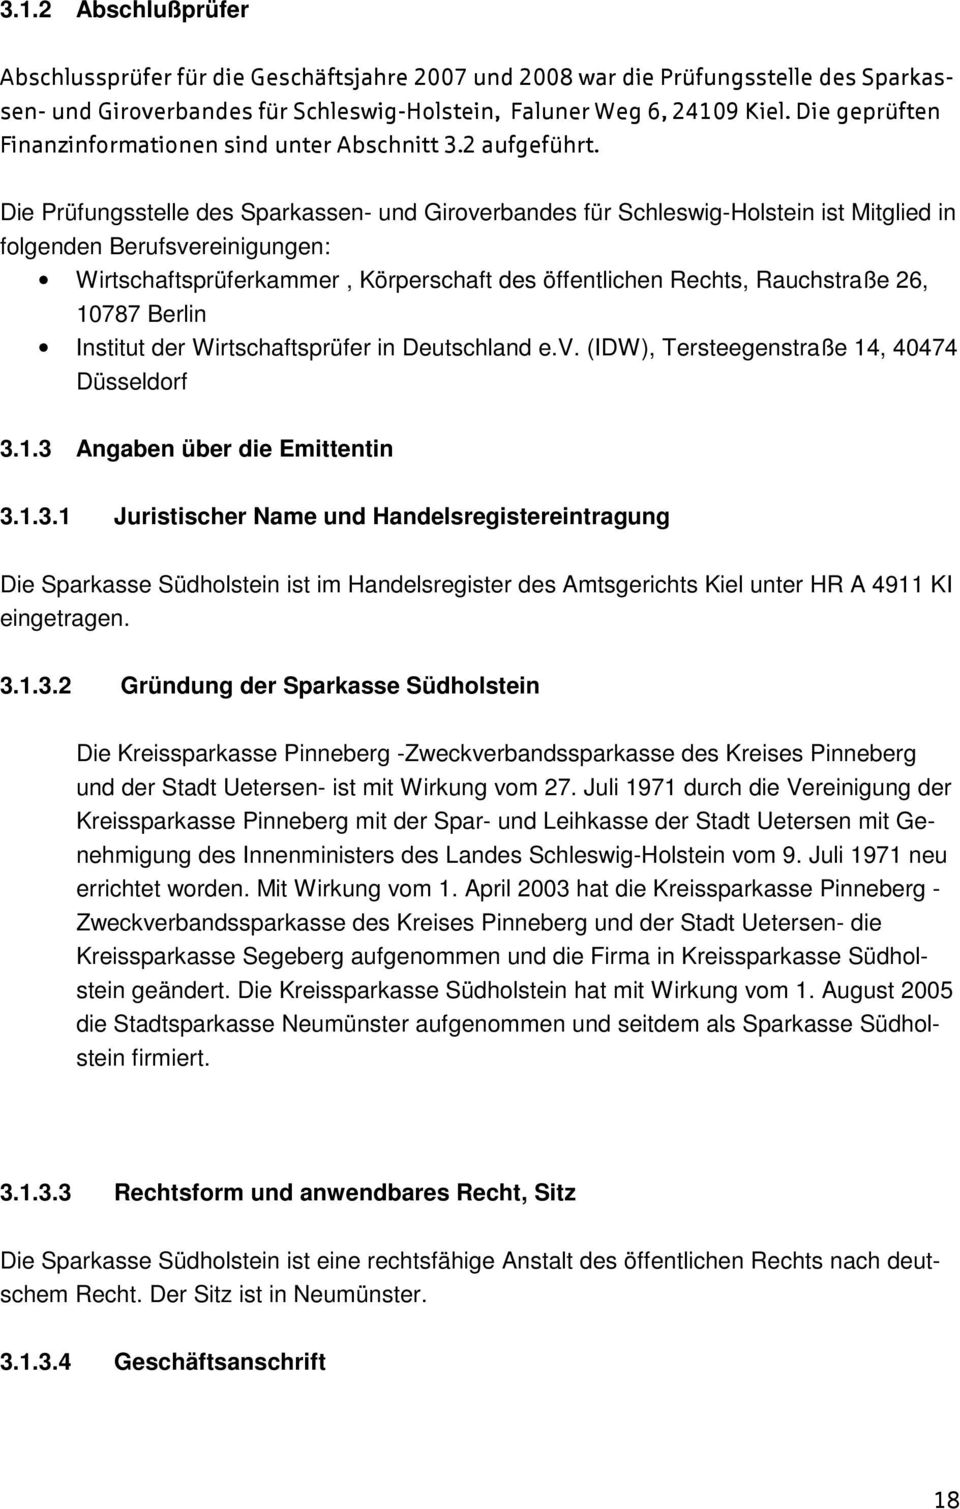 Die Prüfungsstelle des Sparkassen- und Giroverbandes für Schleswig-Holstein ist Mitglied in folgenden Berufsvereinigungen: Wirtschaftsprüferkammer, Körperschaft des öffentlichen Rechts, Rauchstraße